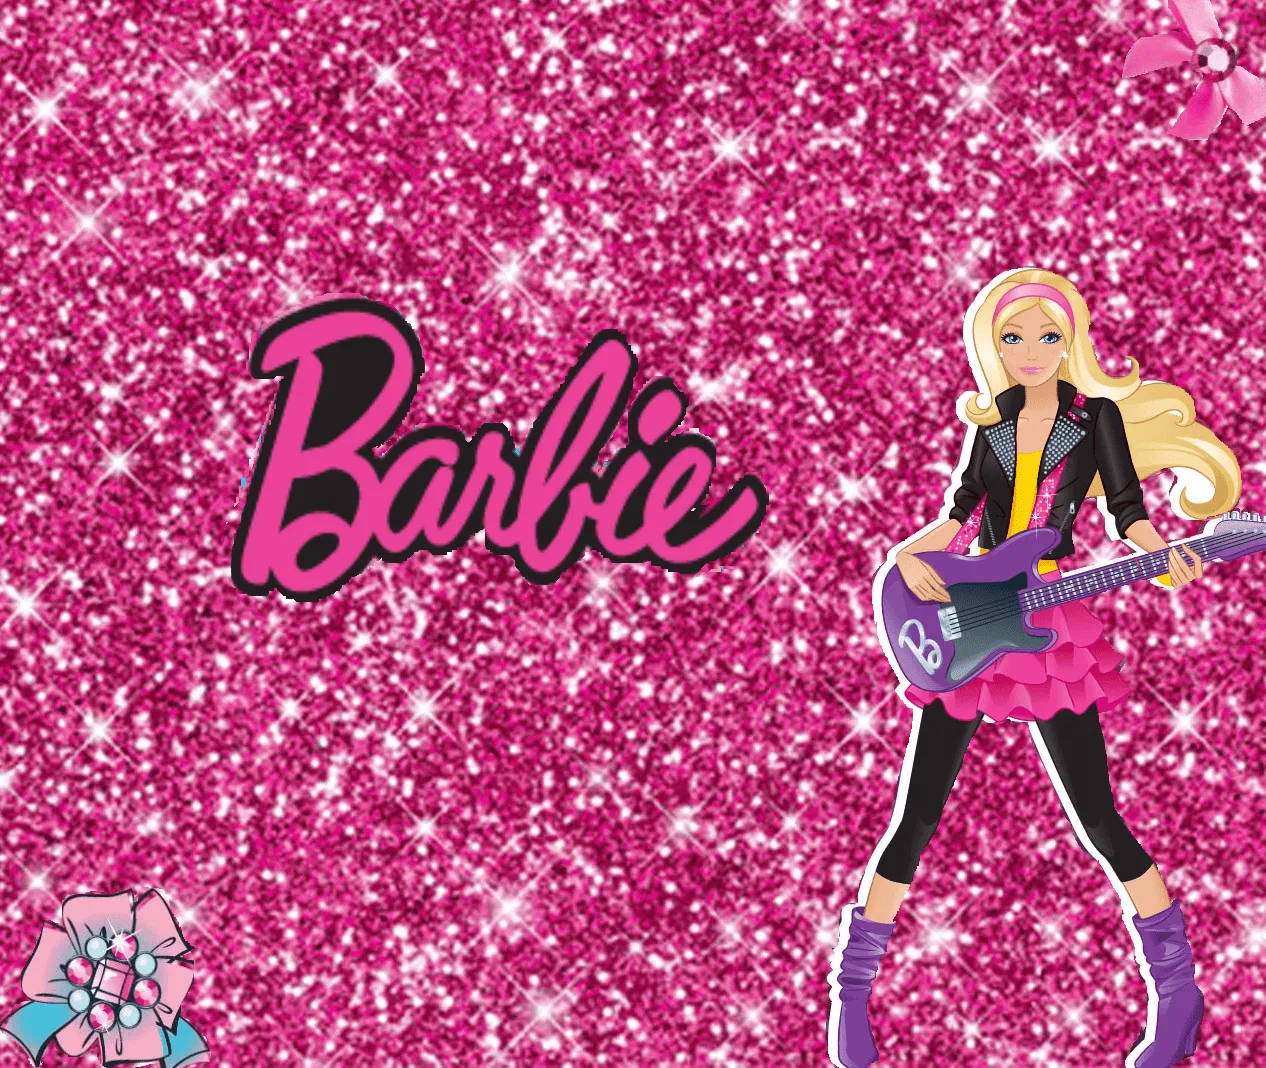 Fondos de Barbie - Imagui